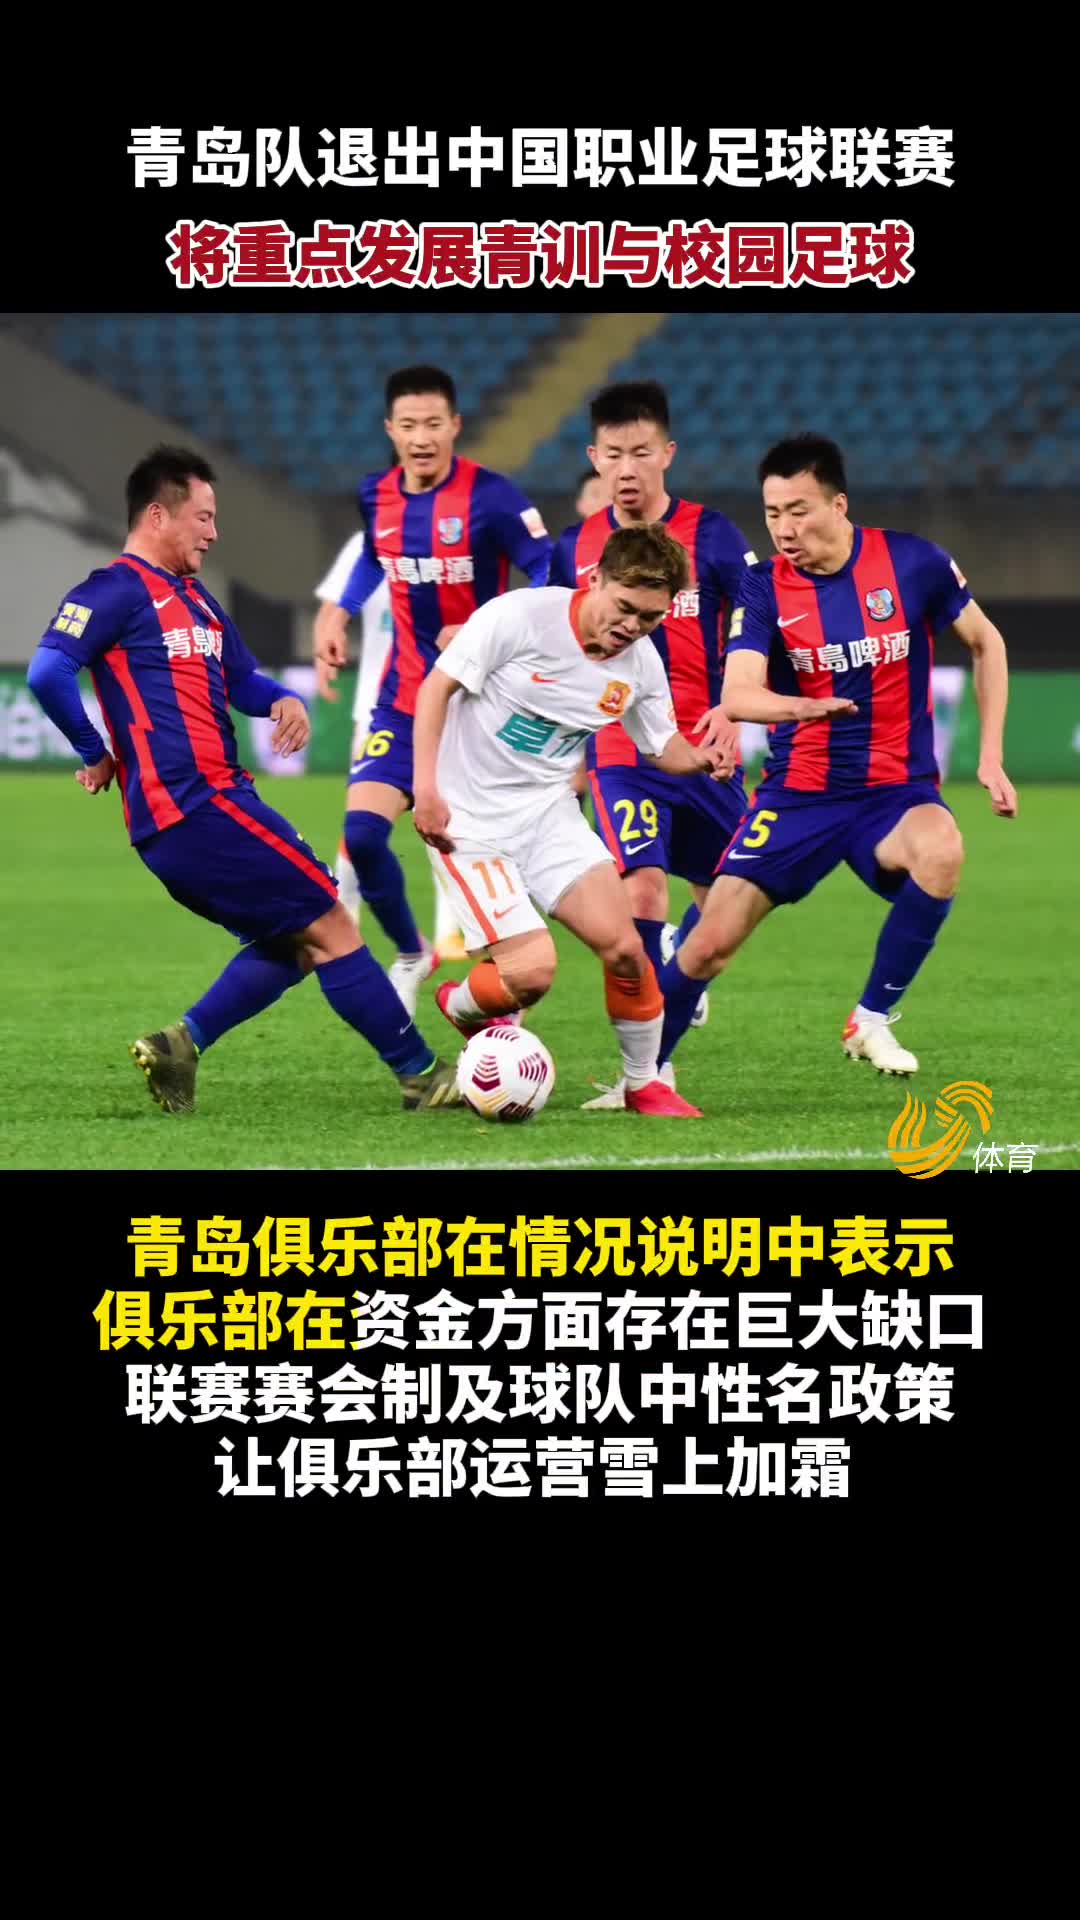 青岛队正式退出中国足坛 接下来将发展青训与校园足球